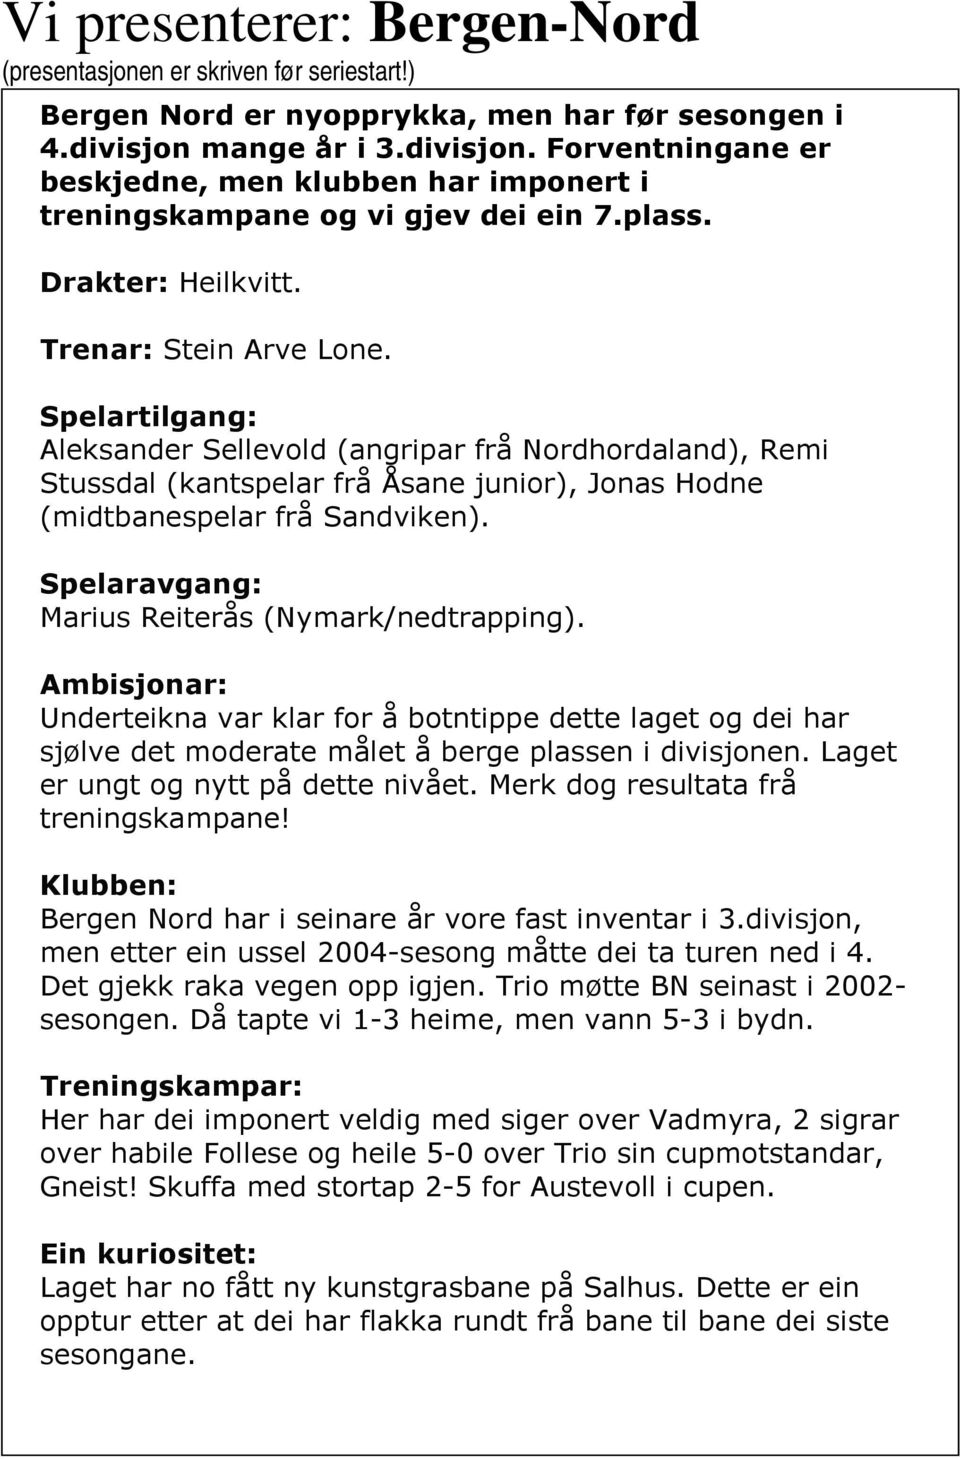 Spelartilgang: Aleksander Sellevold (angripar frå Nordhordaland), Remi Stussdal (kantspelar frå Åsane junior), Jonas Hodne (midtbanespelar frå Sandviken).